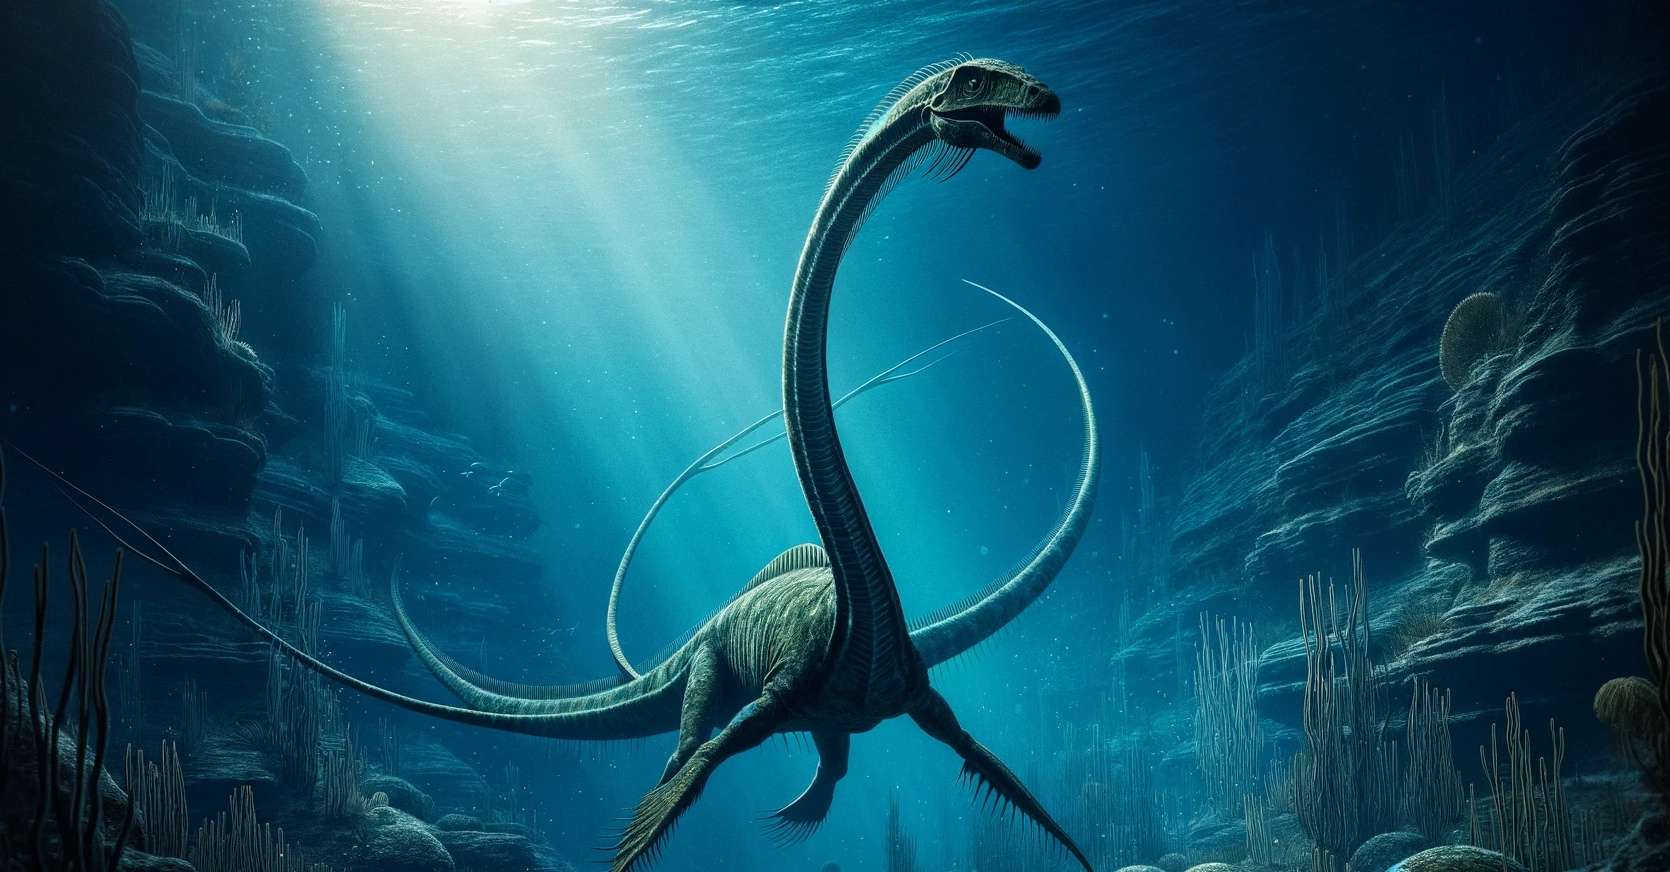 Découverte de fossiles de redoutables dragons qui terrorisaient les océans il y a 240 millions d’années !